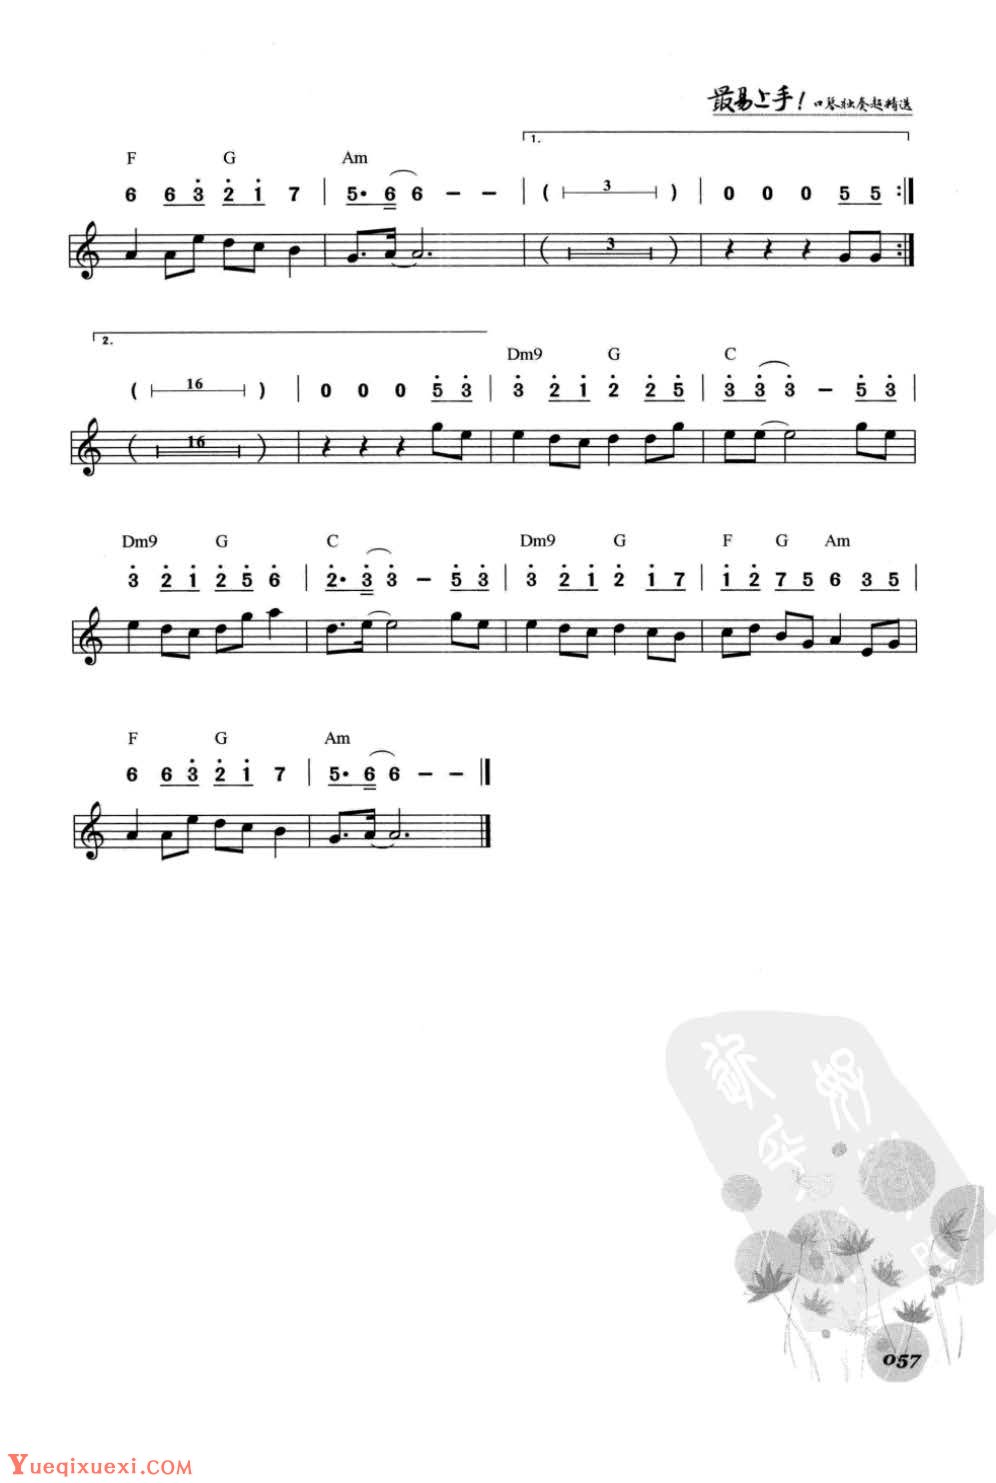 口琴华语流行歌曲《画心》简谱与五线谱对照